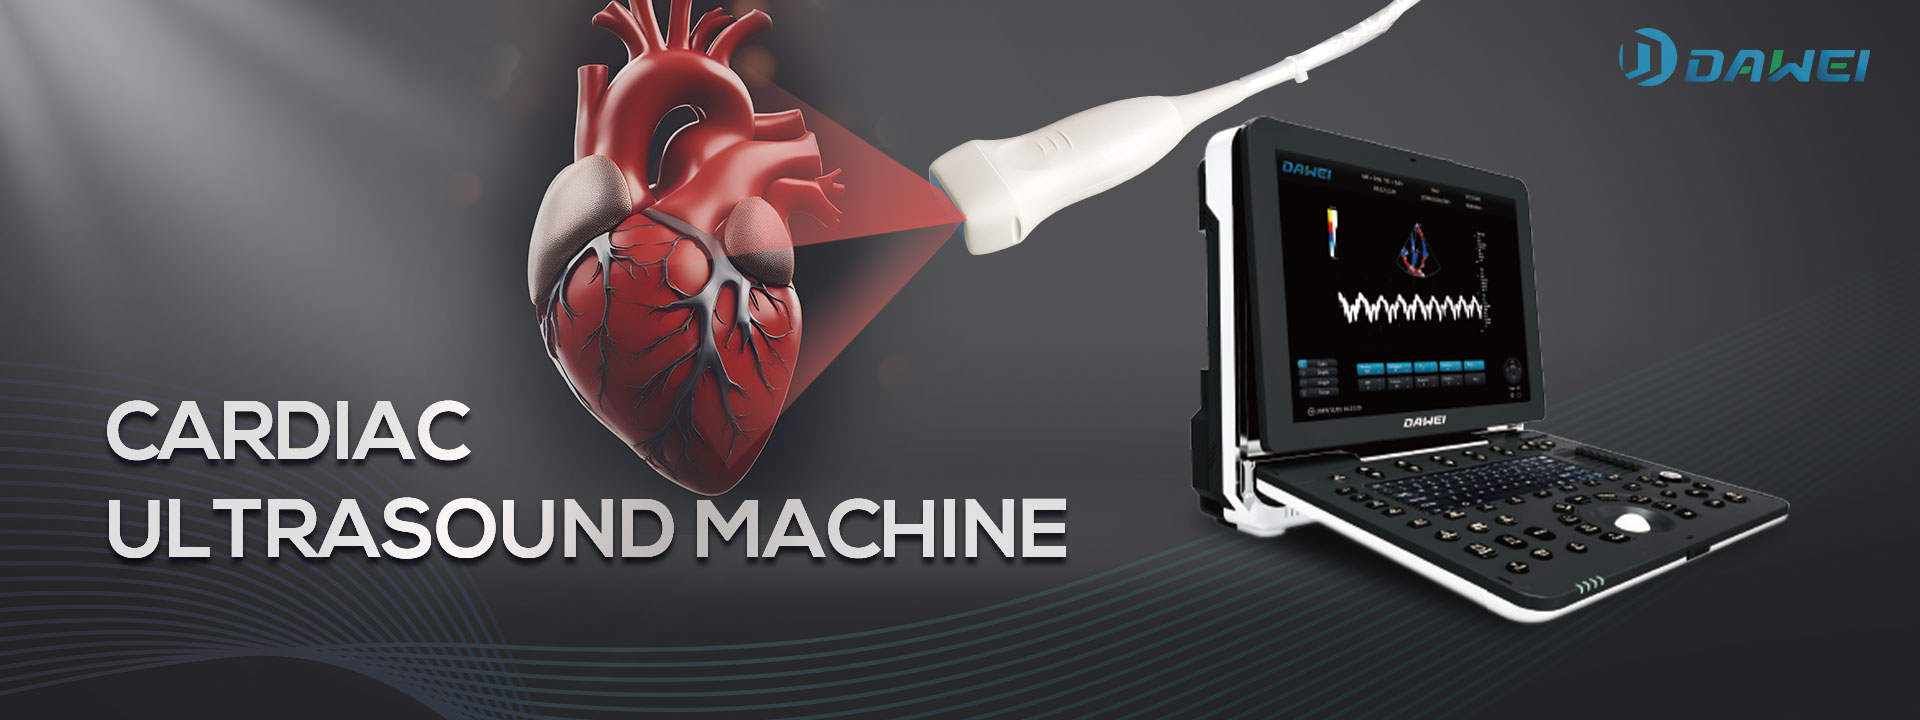 Explorando a máquina de ultrassom cardíaco: o manual do novo comprador